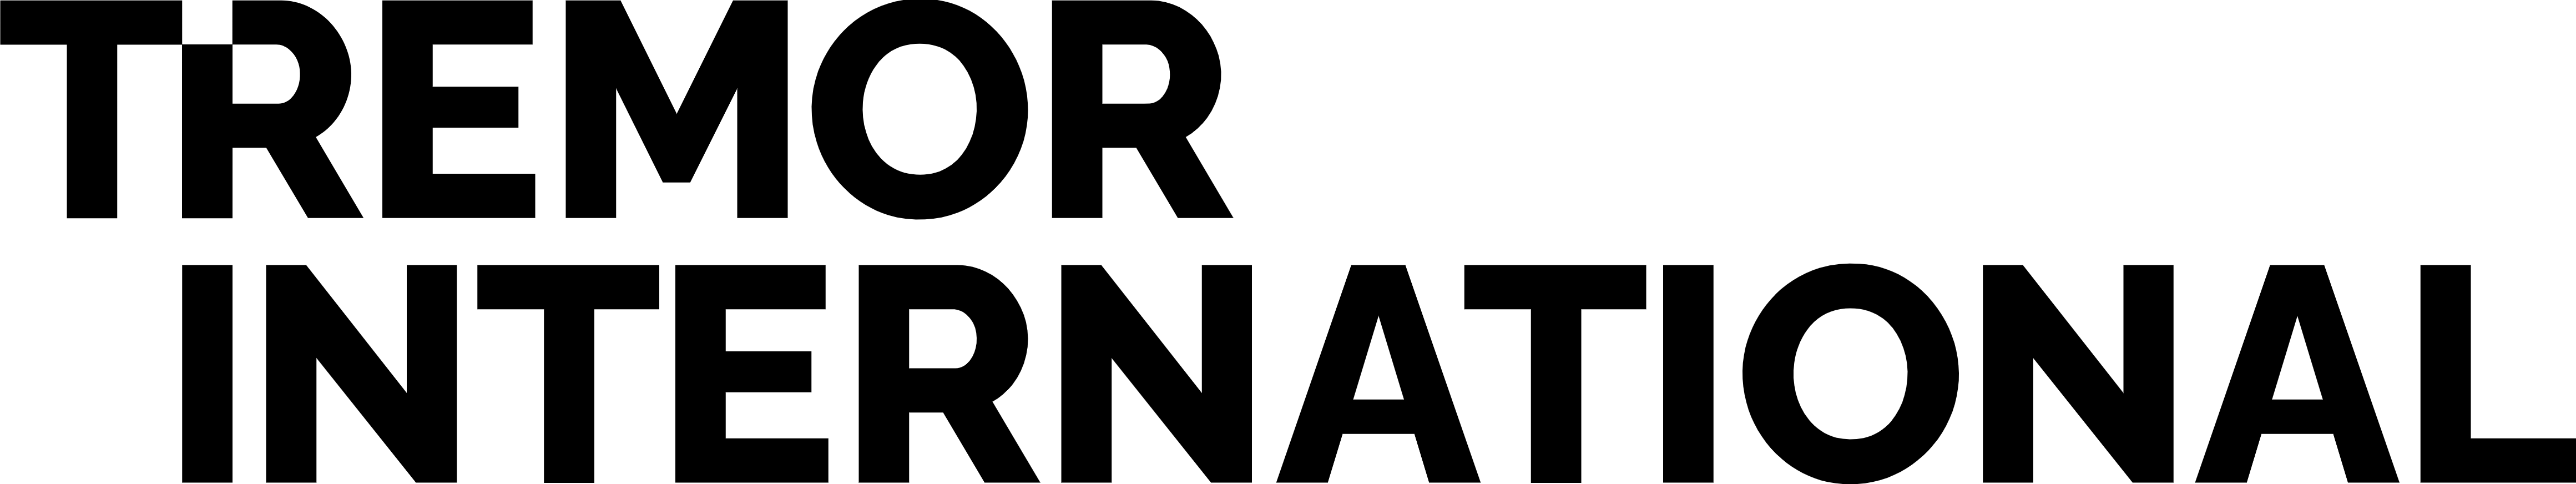 Tremor International logo large (transparent PNG)